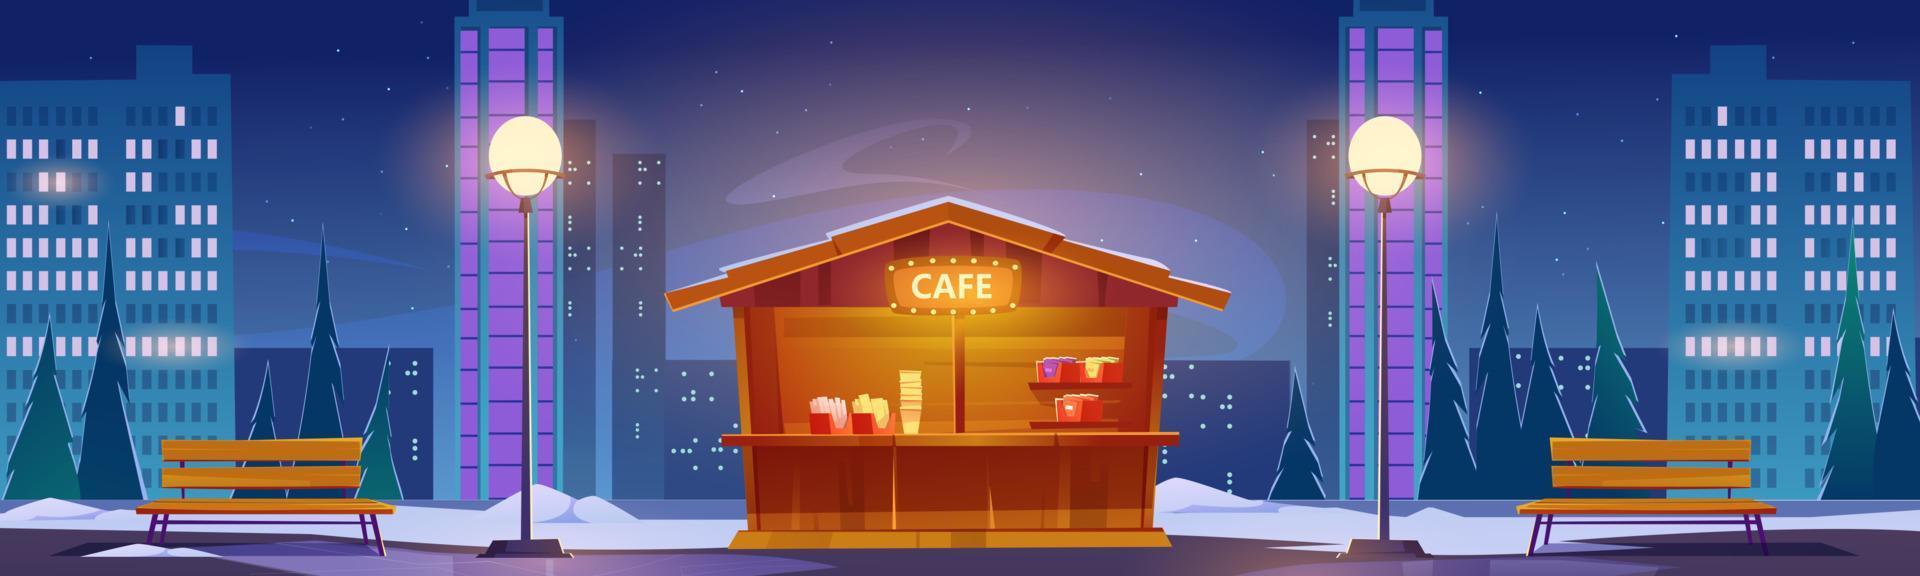 café de fastfood de rua na paisagem urbana de noite de inverno vetor